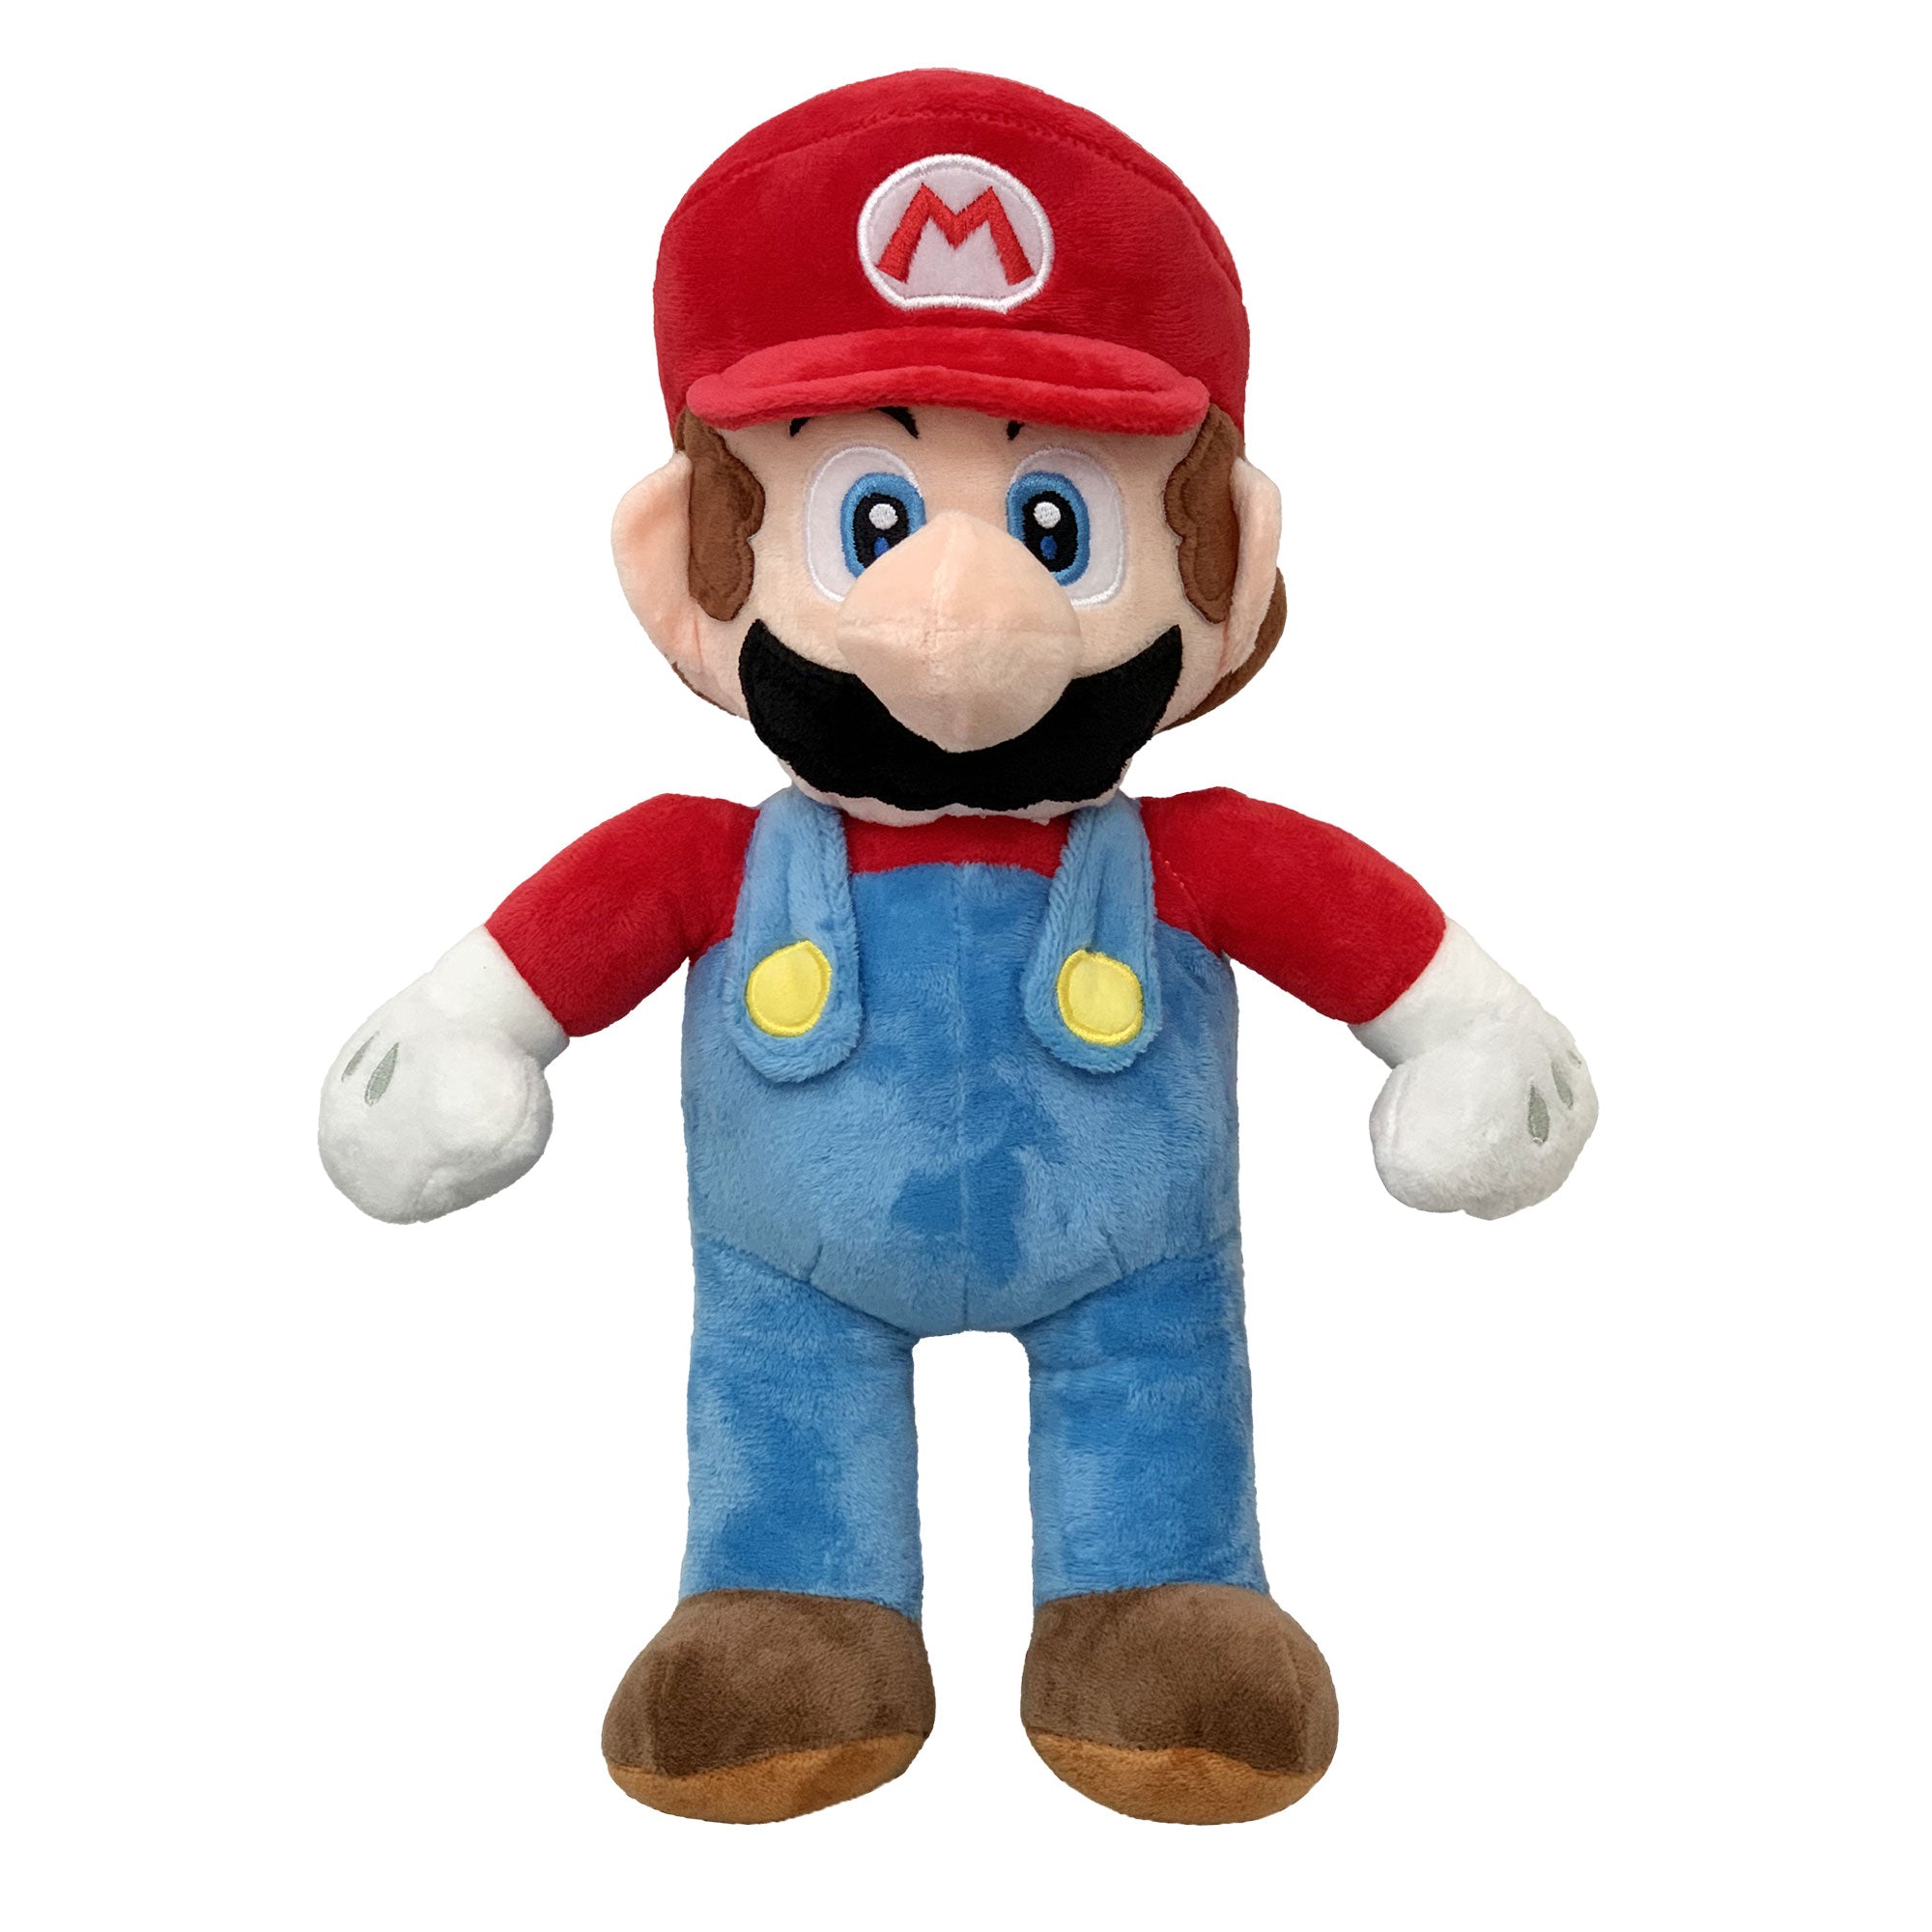 Peluche Mario di Super Mario Bros pupazzo 36cm del videogame per bambini 5972